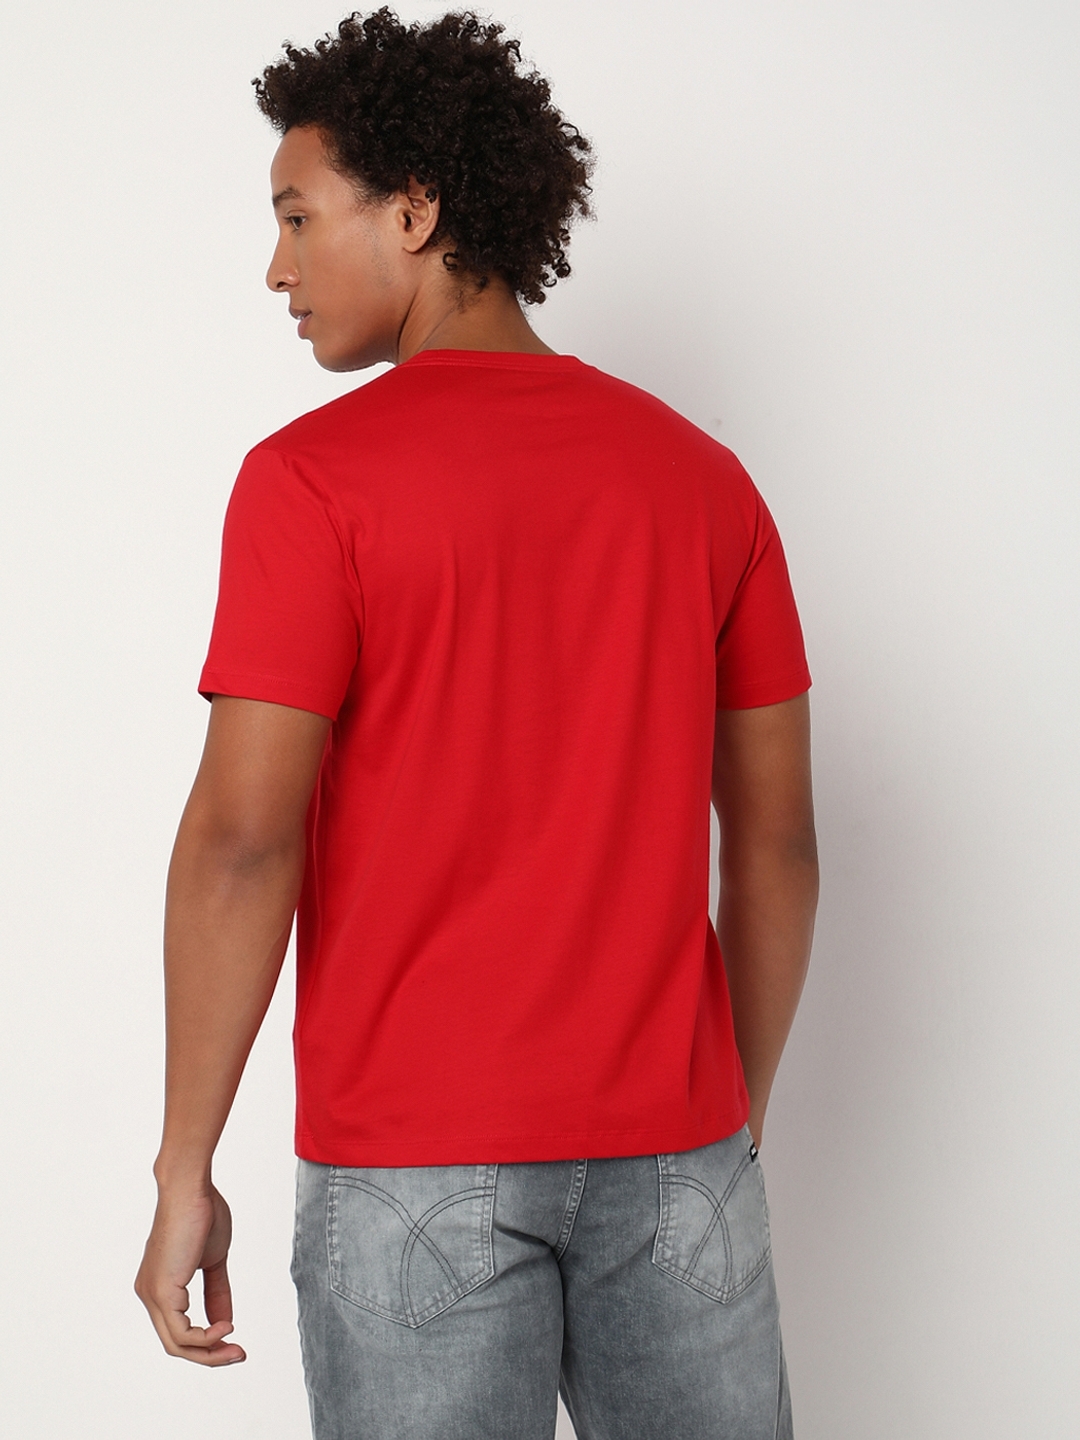 Regular Fit Half Sleeve Crew Neck Brand Carrier Cotton T-Shirt